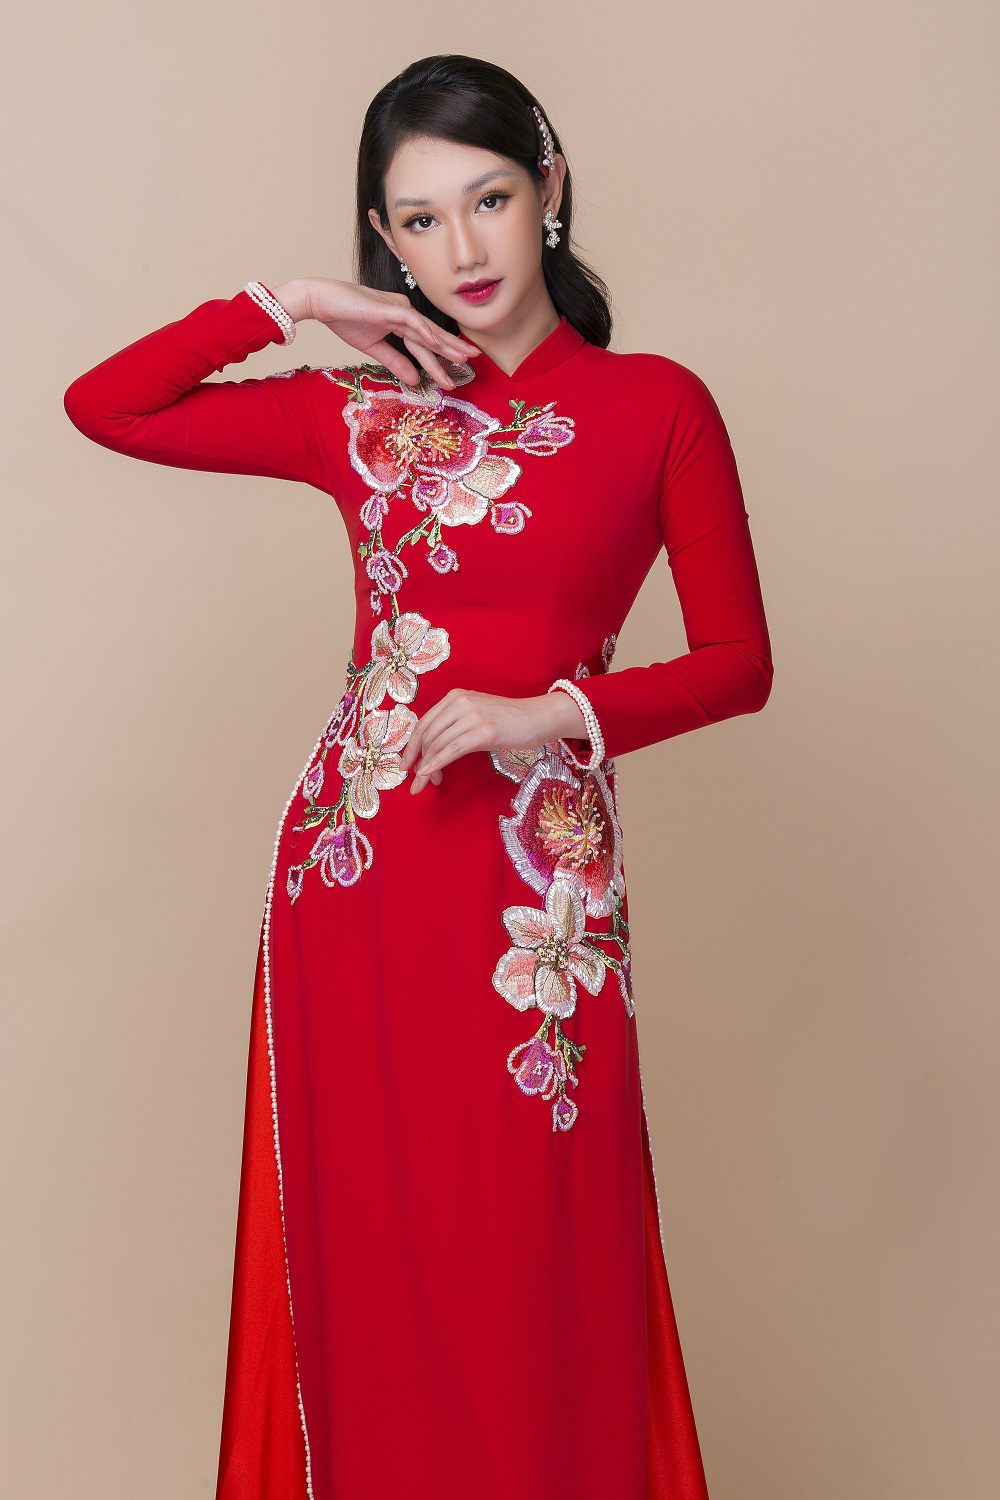 Hot girl Quỳnh Chi xinh đẹp khi diện áo dài cưới - Ảnh 6.